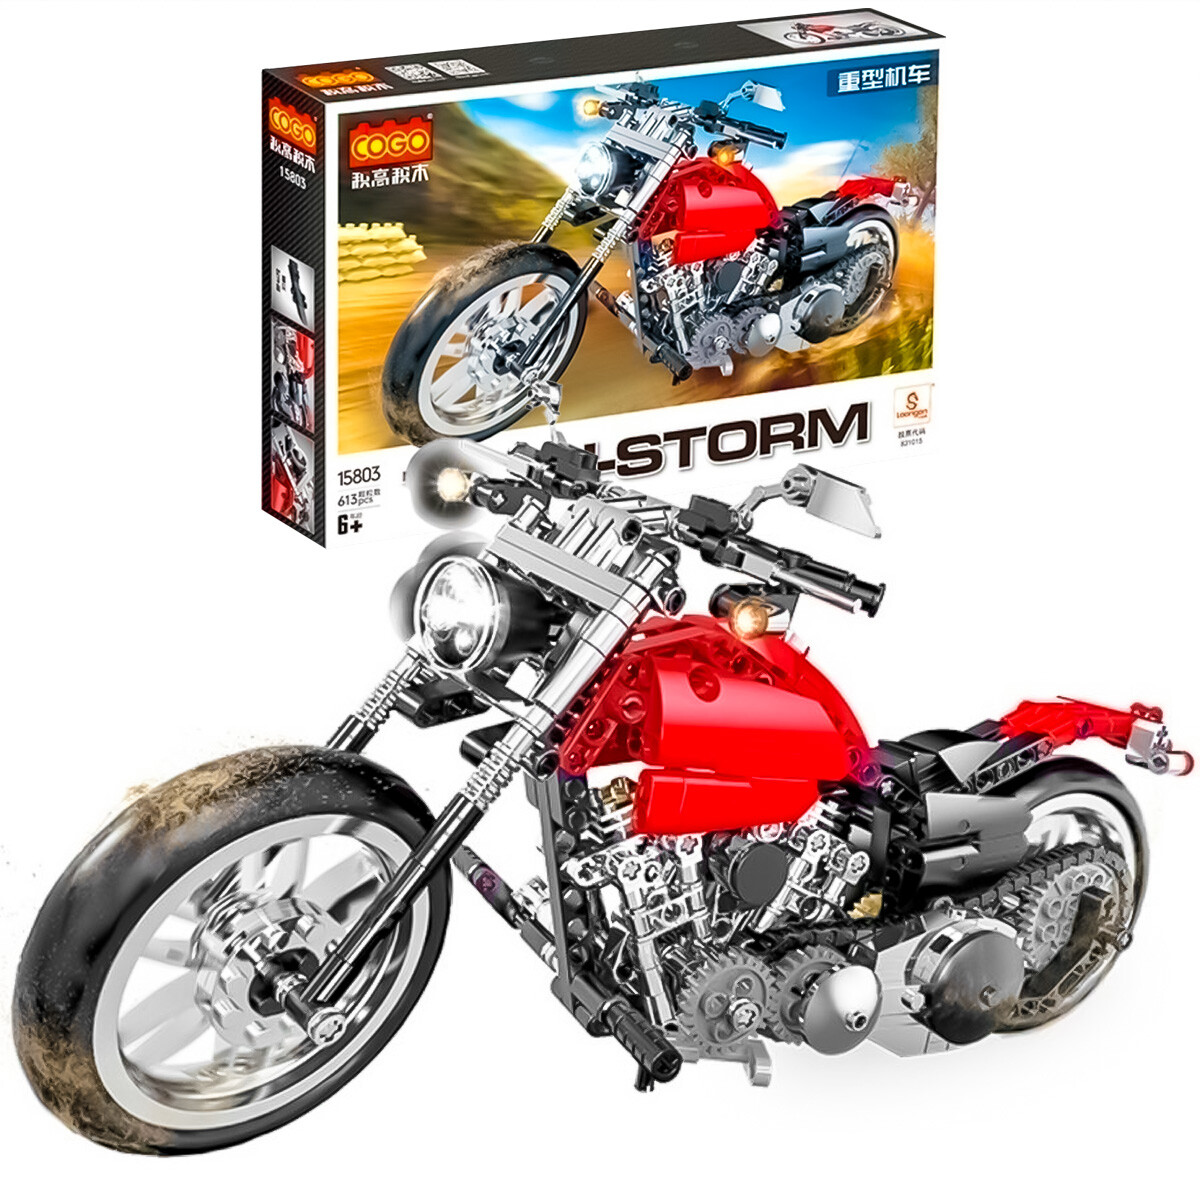 Vehículo Cogo Tech Storm Bloques Construcción +490pcs - Motocicleta Roja 